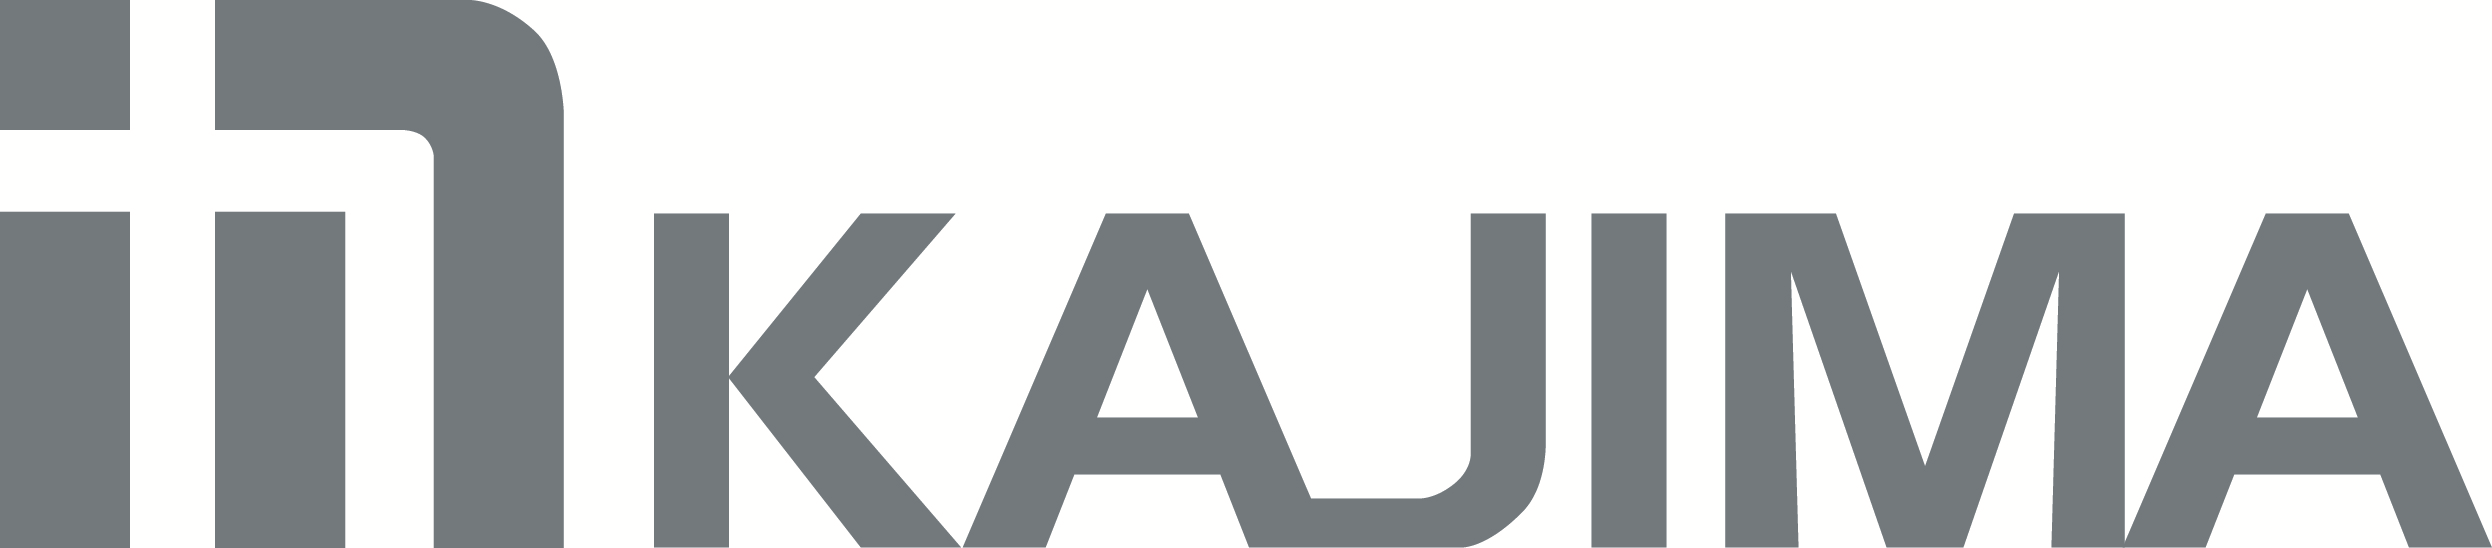 kajim-usa-logo